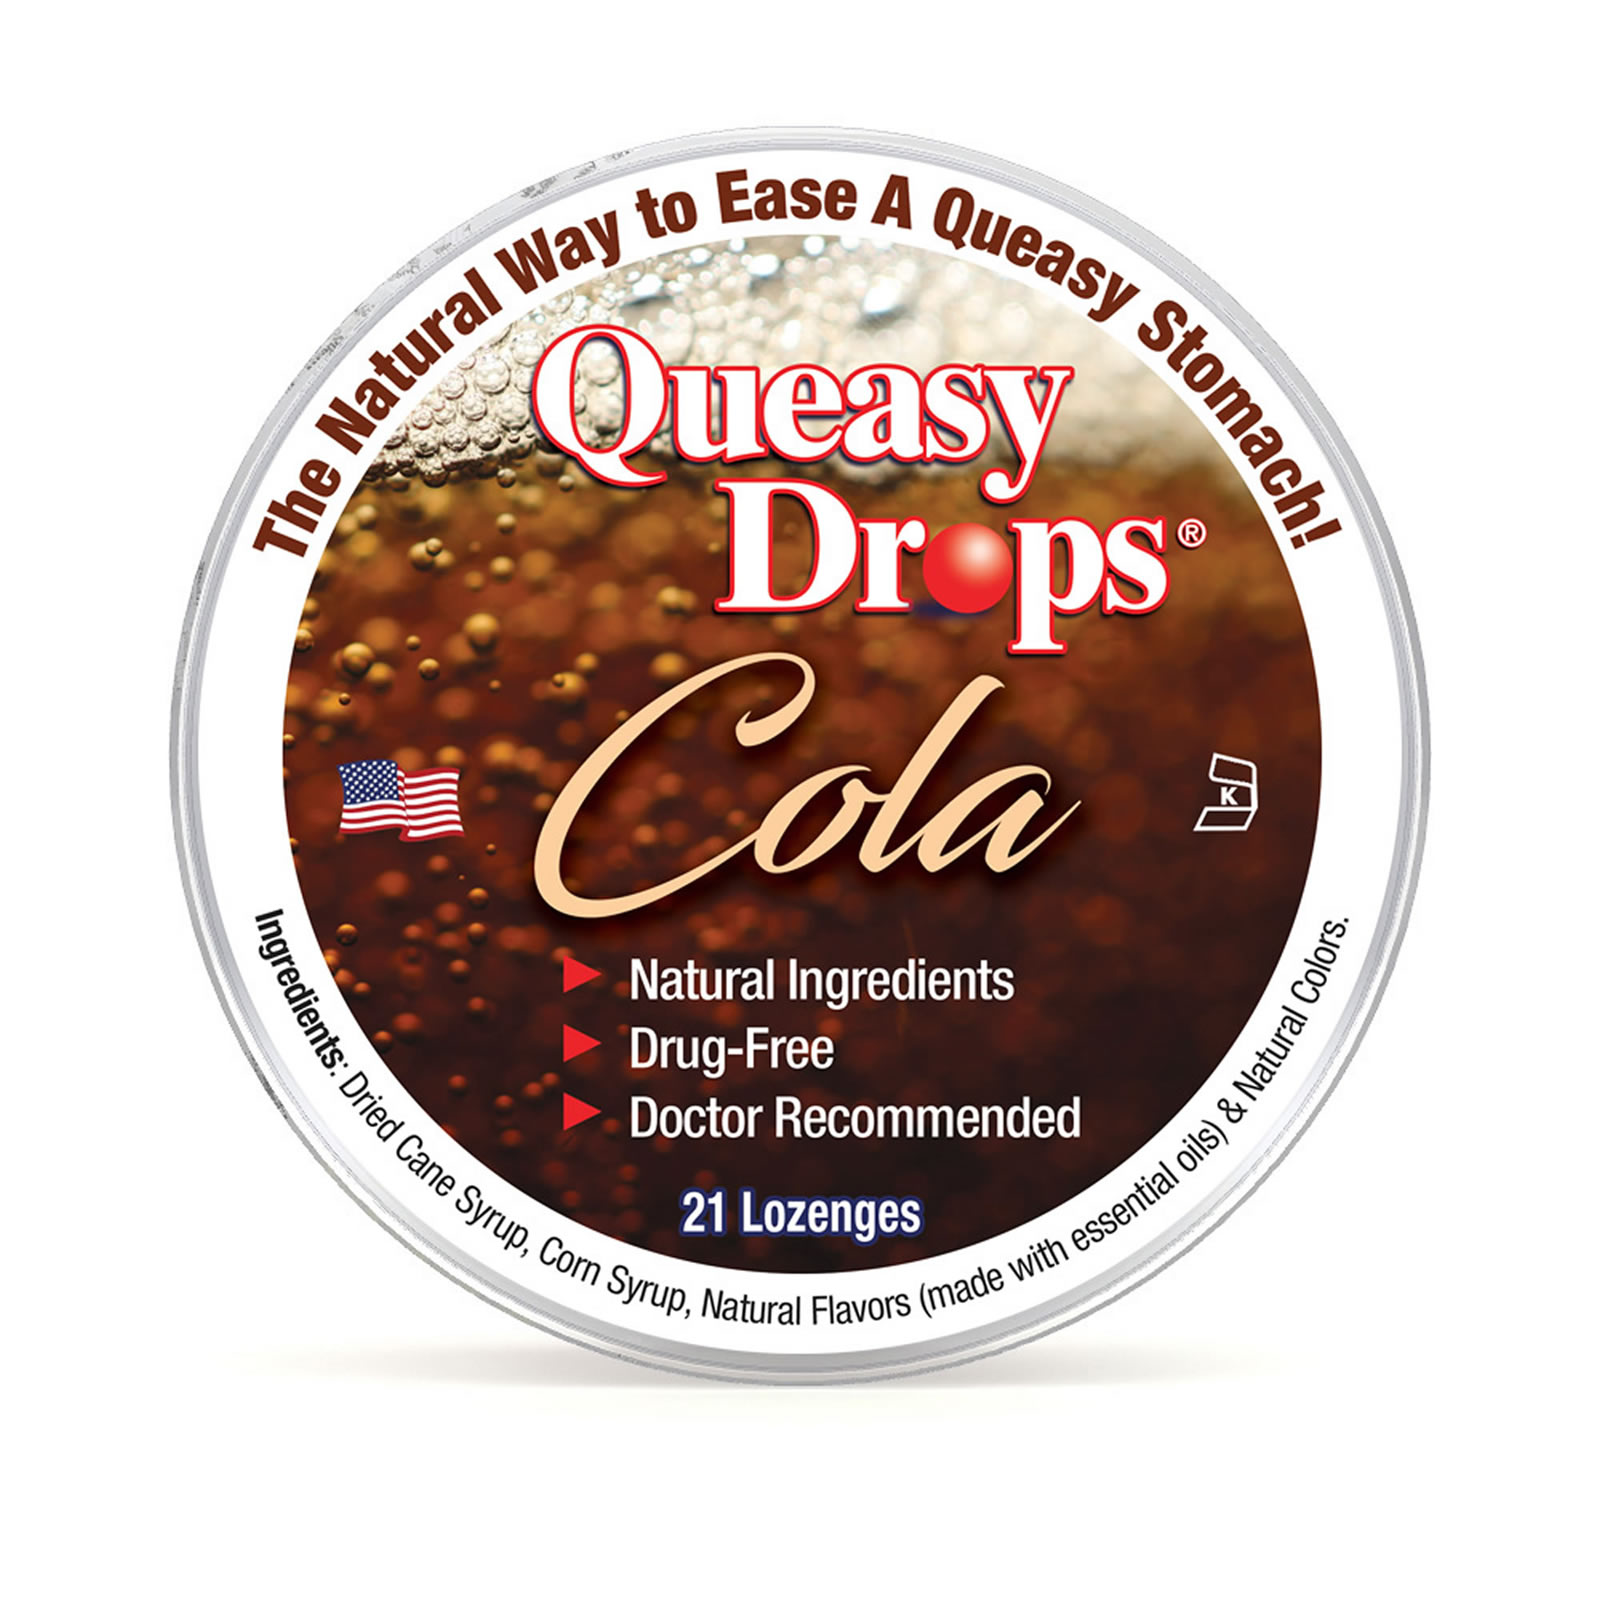 Natural Cola Queasy Drops